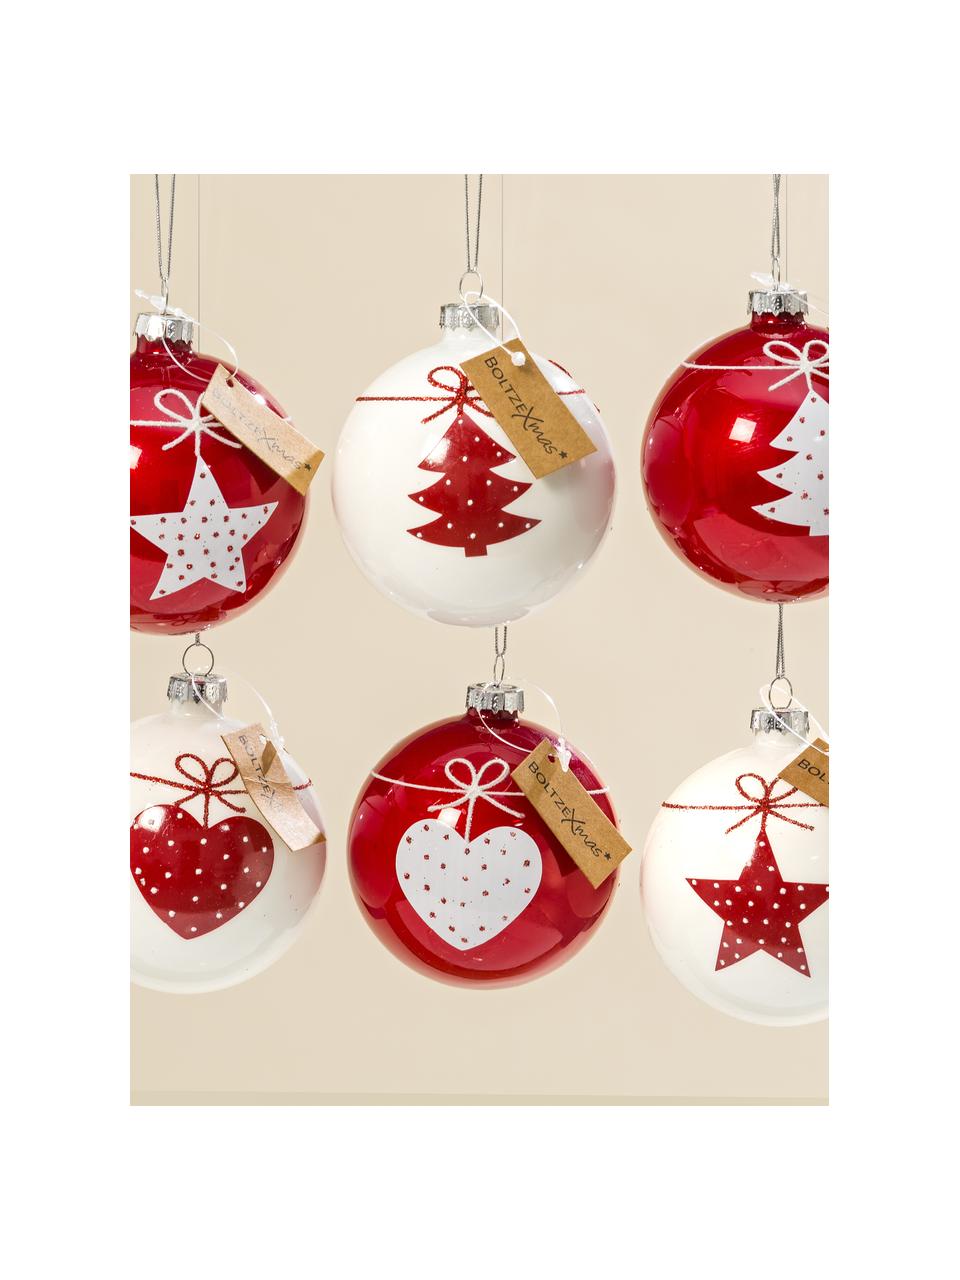 Sada vánočních ozdob Gerdi, 6 dílů, Sklo, Červená, bílá, Ø 8 cm, V 9 cm